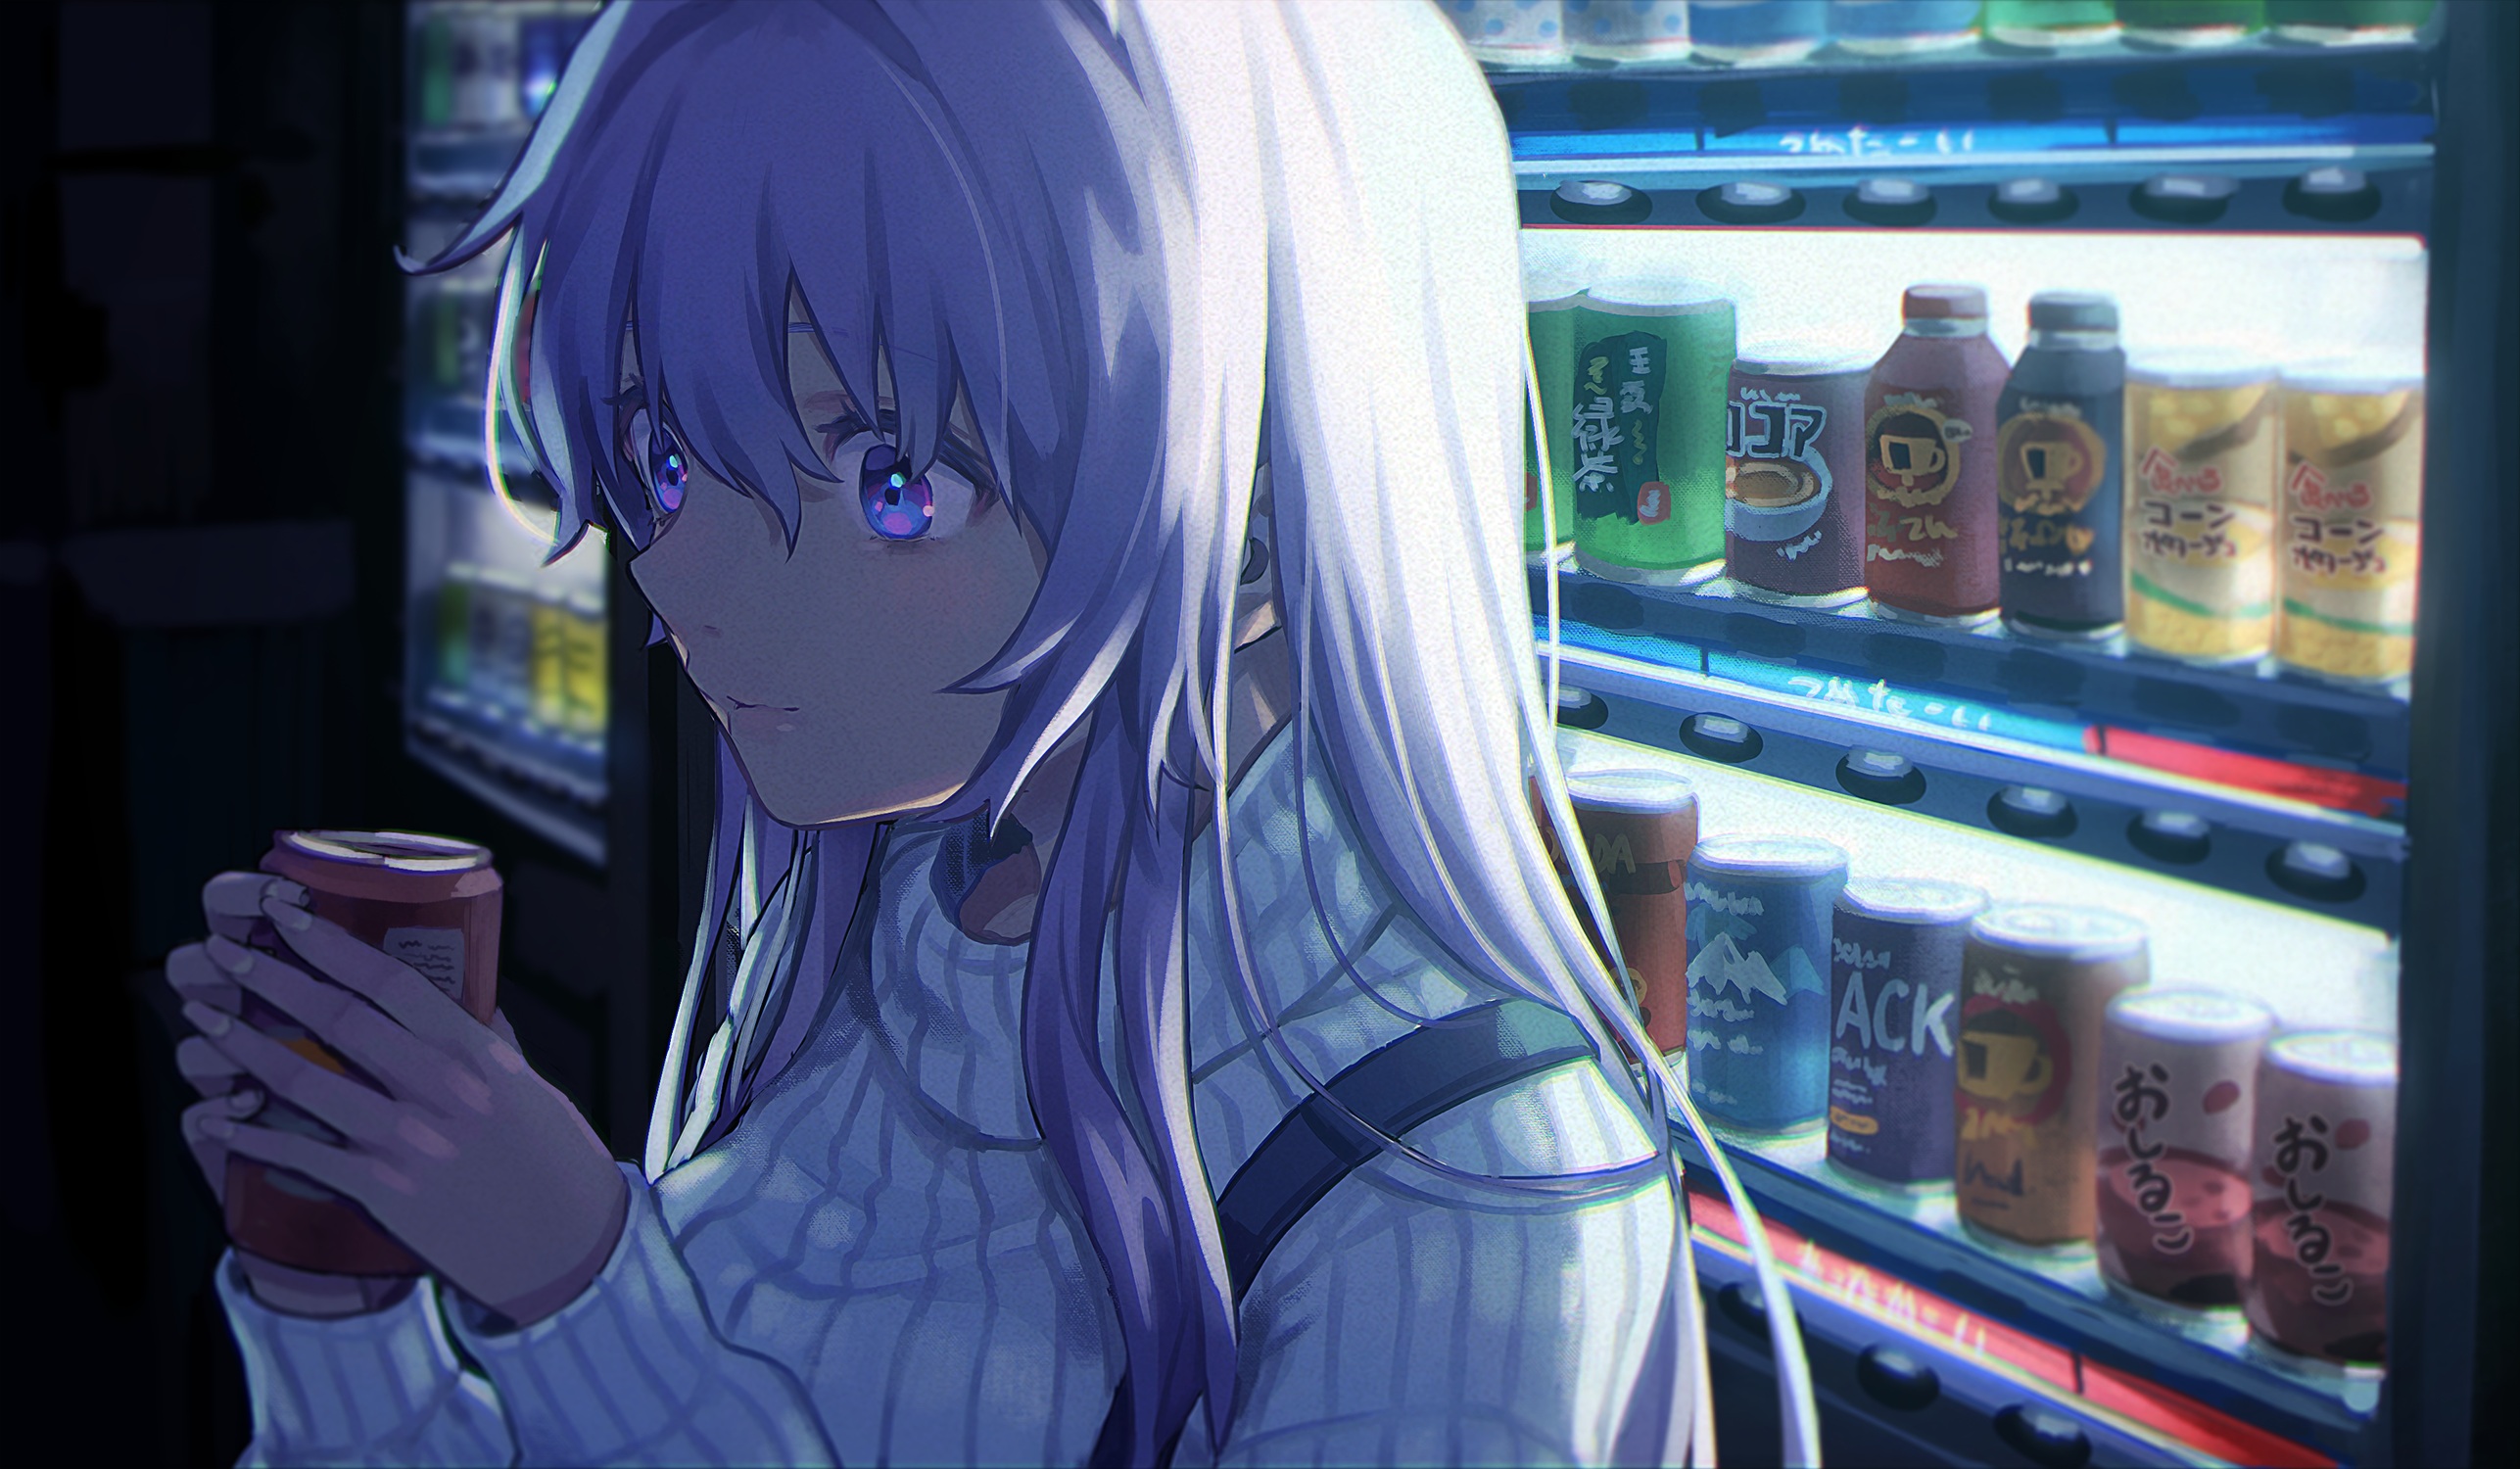 Anime Anime Girls Saino Artwork Night Vending Machine Shocked Sweater 2573x1500